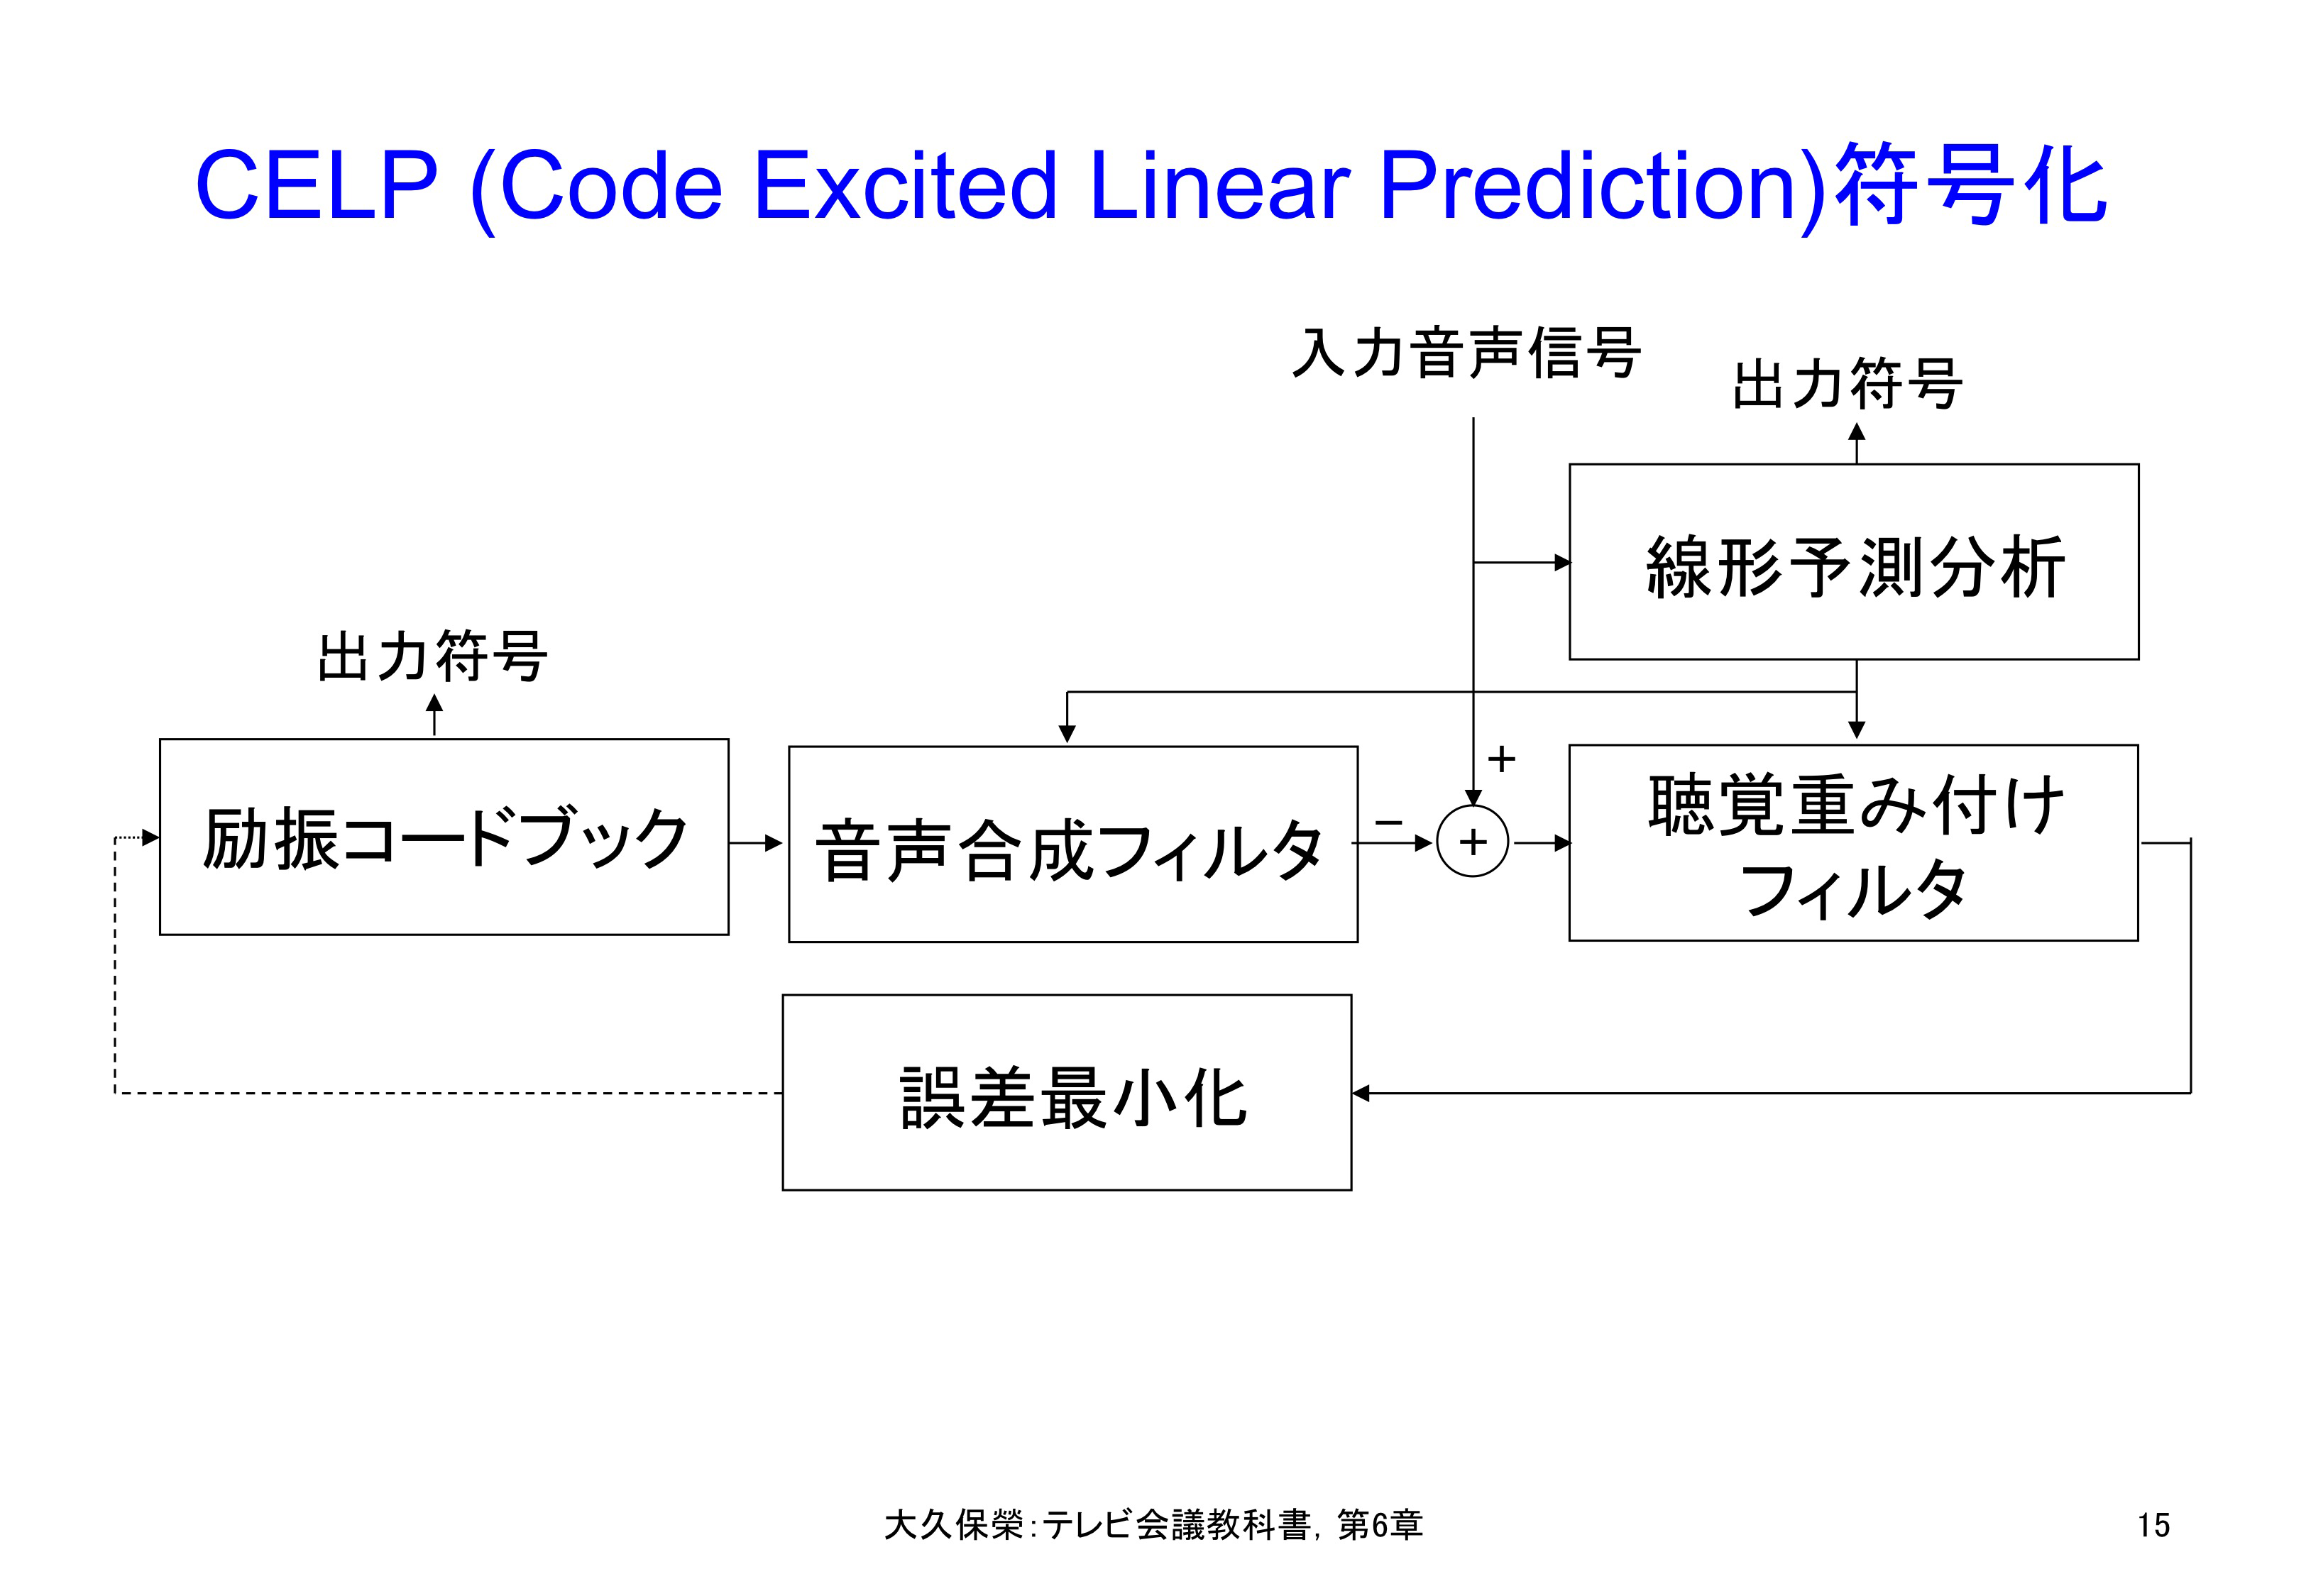 図6-15 CELP (Code Excited Linear Prediction)符号化